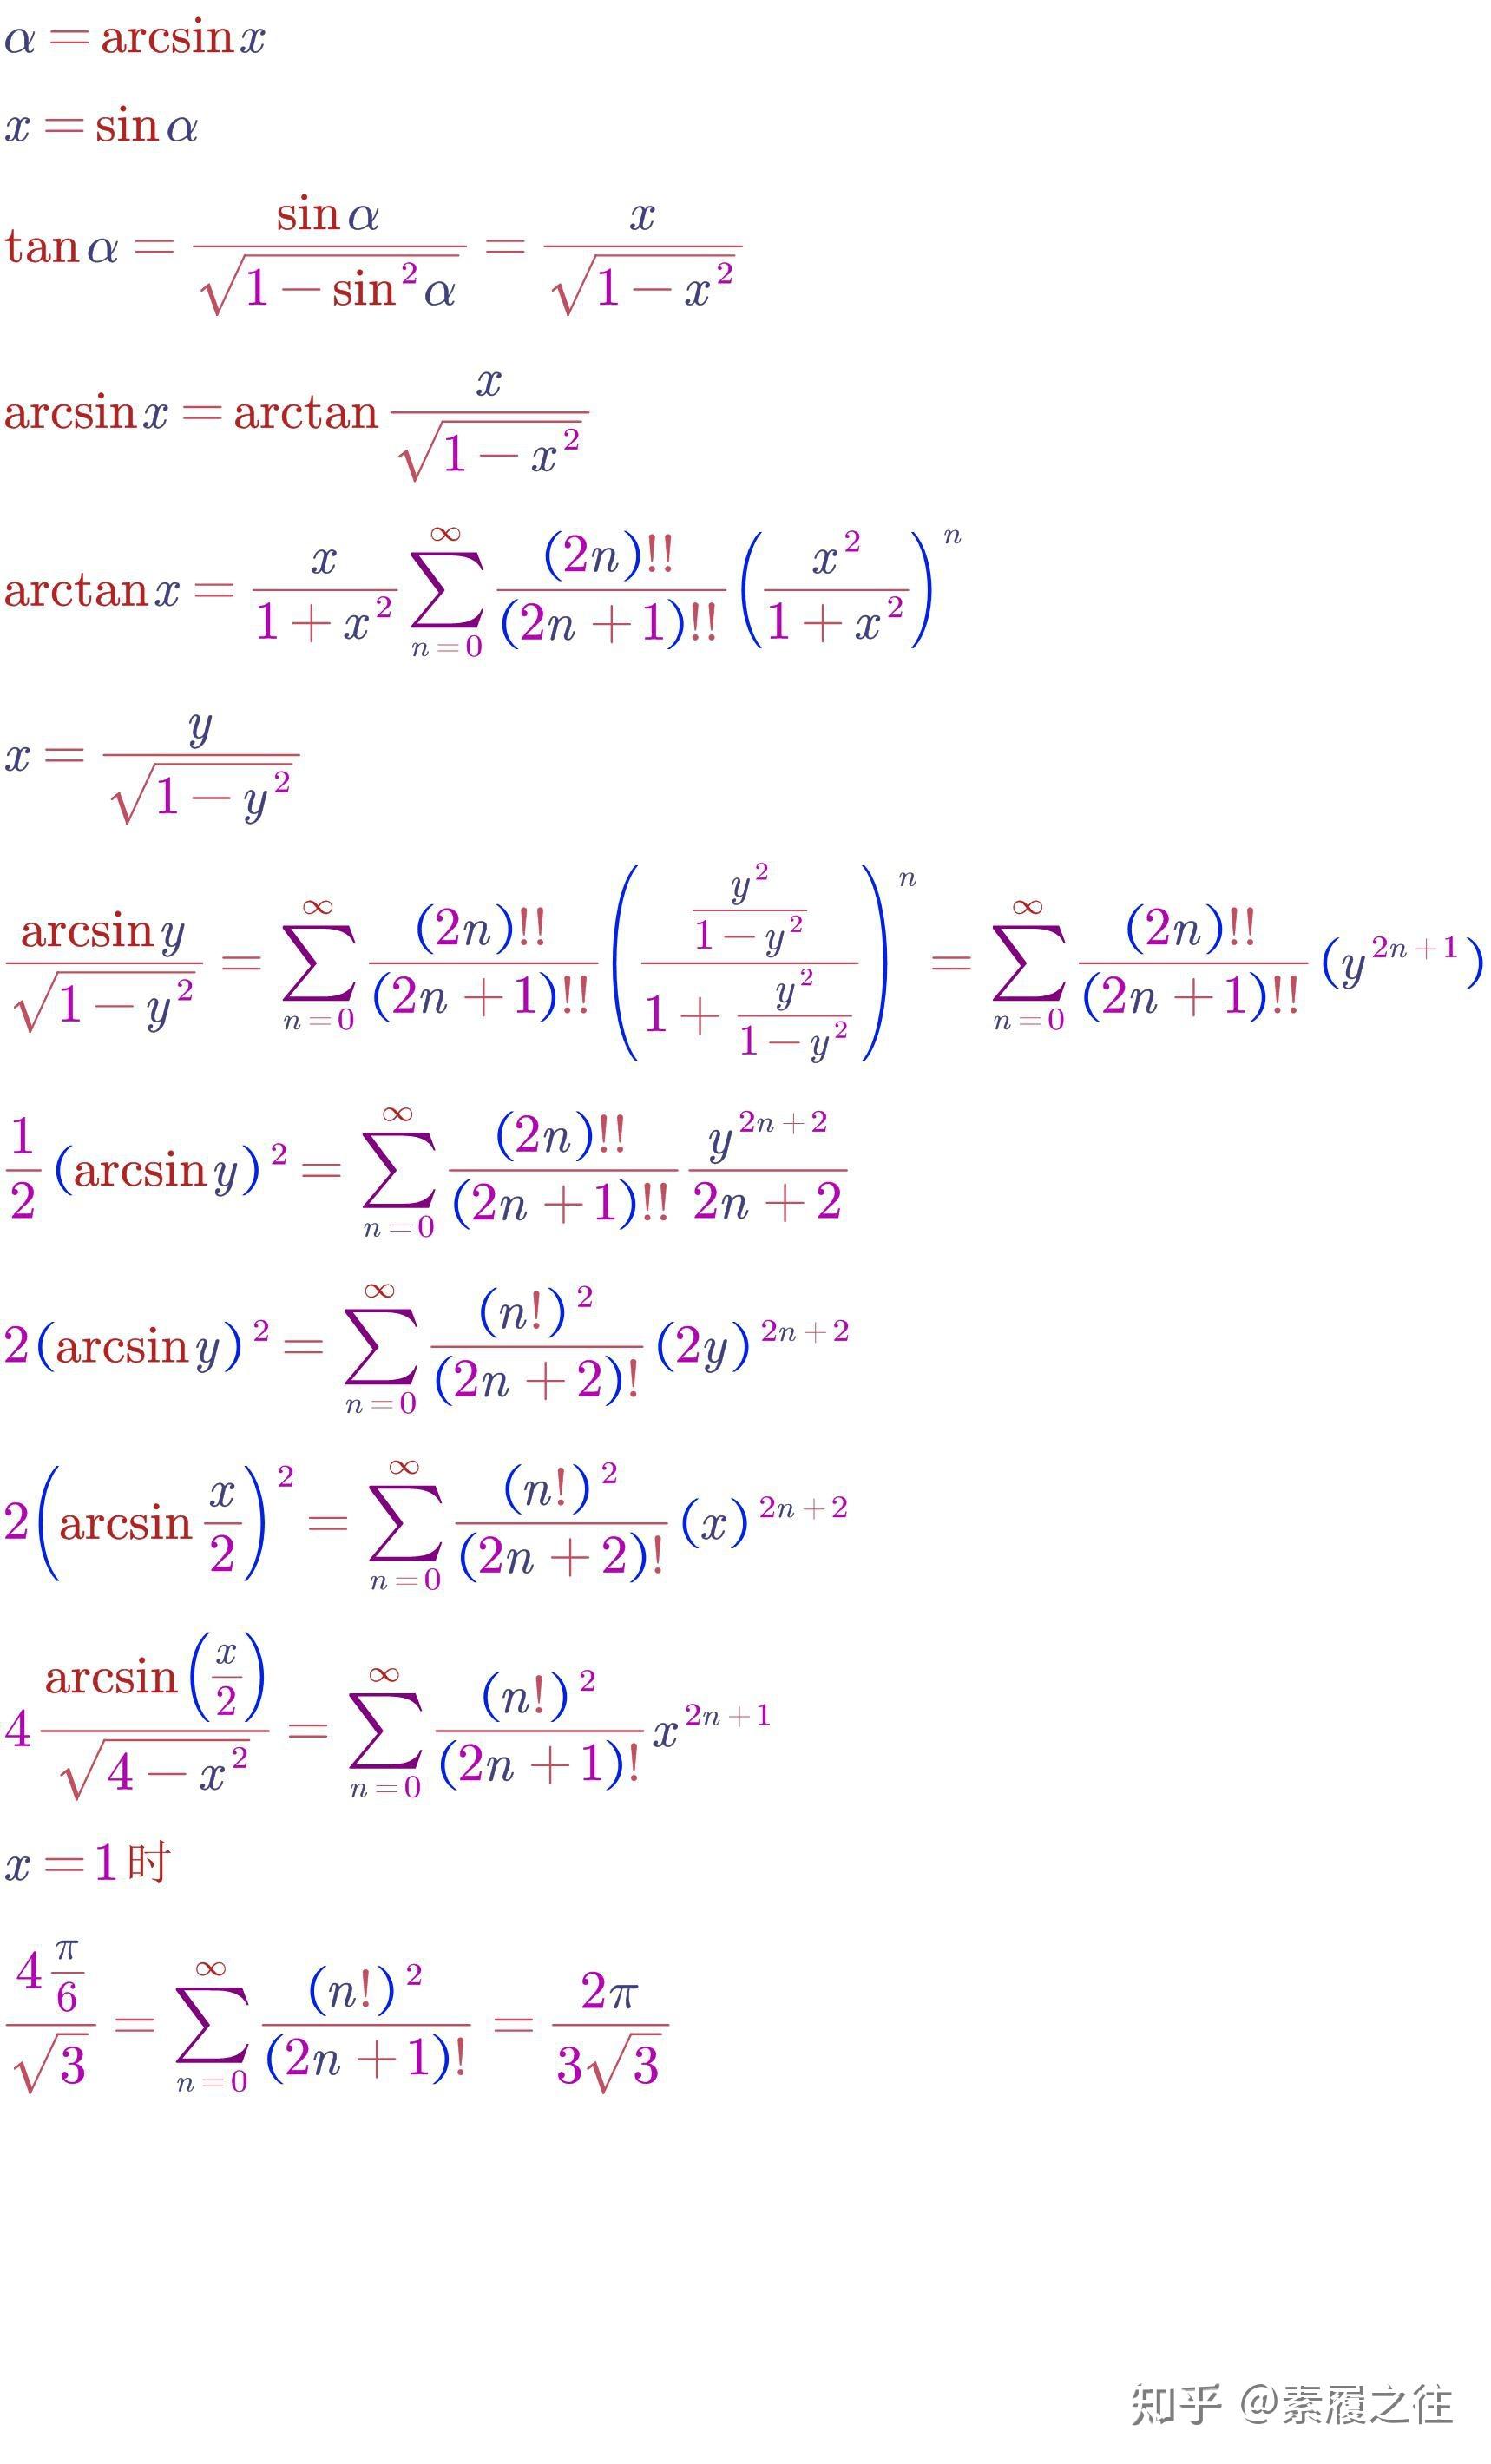 (arcsin x)^2的泰勒展开式是什么? 